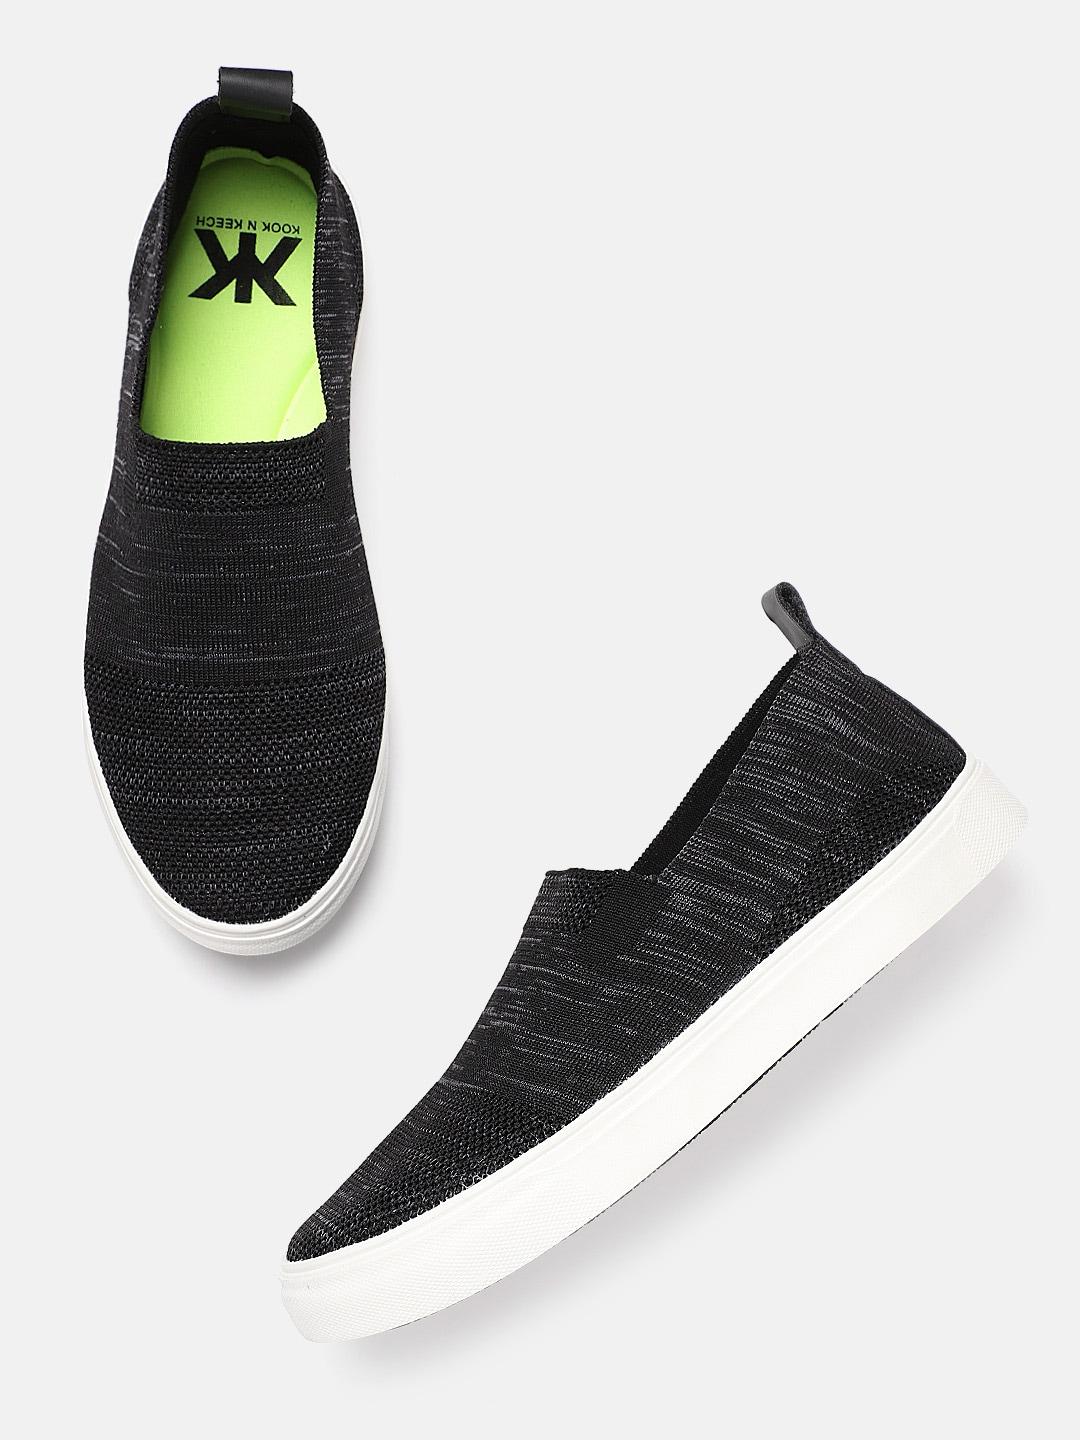 kook-n-keech-men-black-&-grey-woven-design-slip-on-sneakers